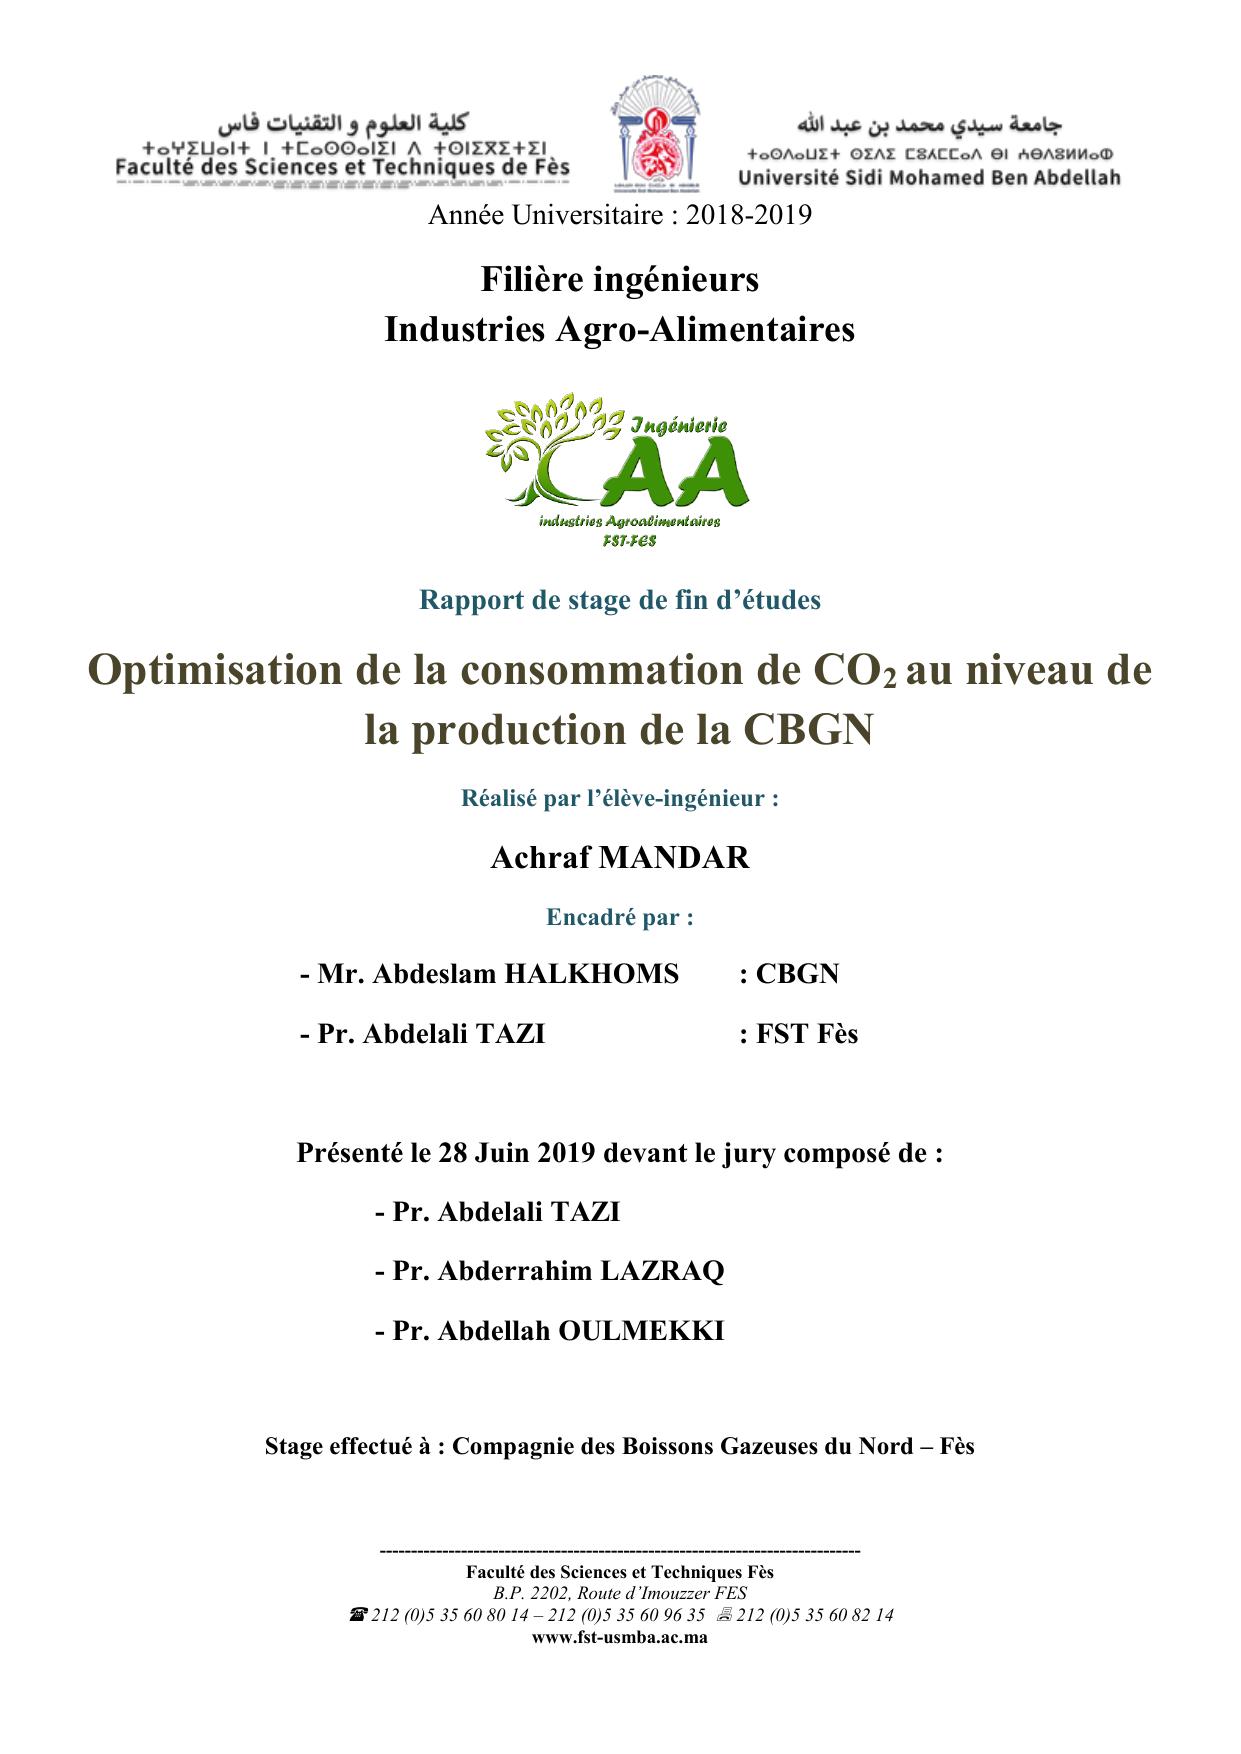 Optimisation de la consommation de CO2 au niveau de la production de la CBGN